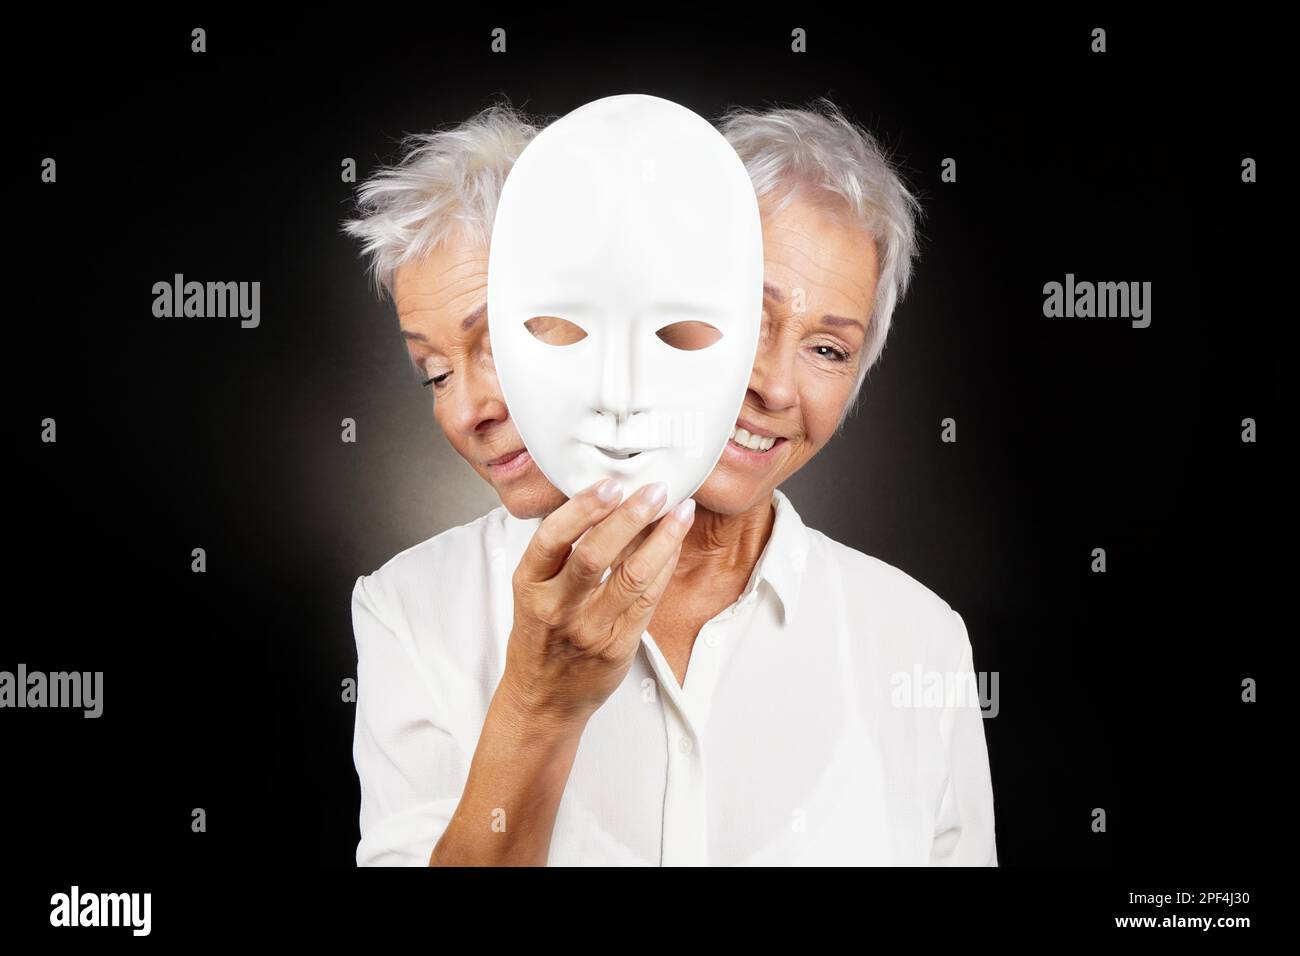 Ältere Frau versteckt sich glücklich und traurig Gesicht hinter der Maske, Konzept für manische Depression oder bipolar oder Fantasy drama Komödie Stockfoto